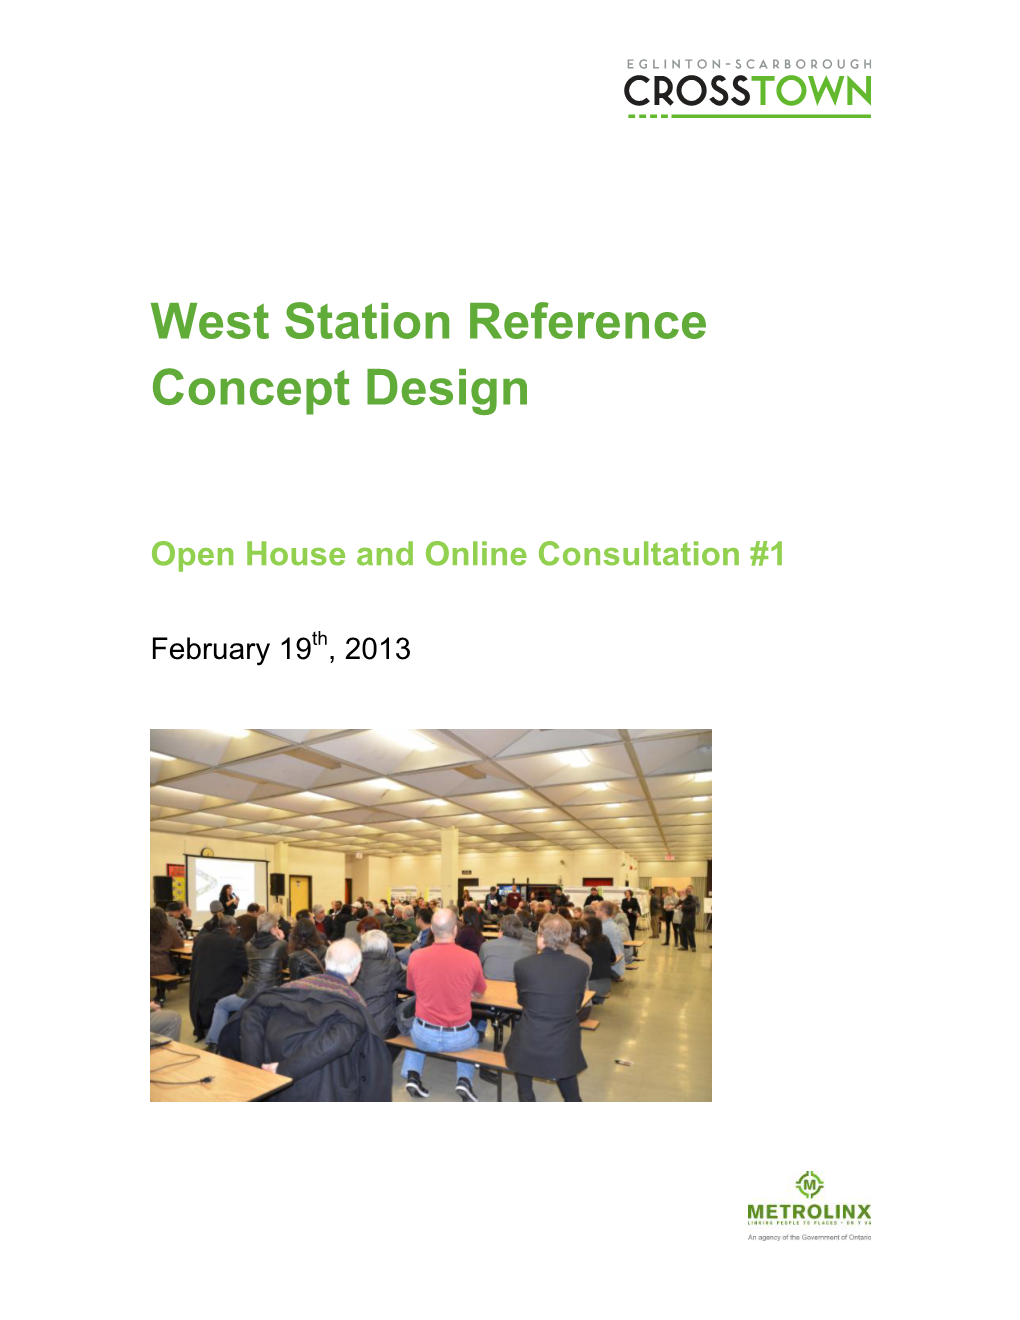 West Station Reference Concept Design